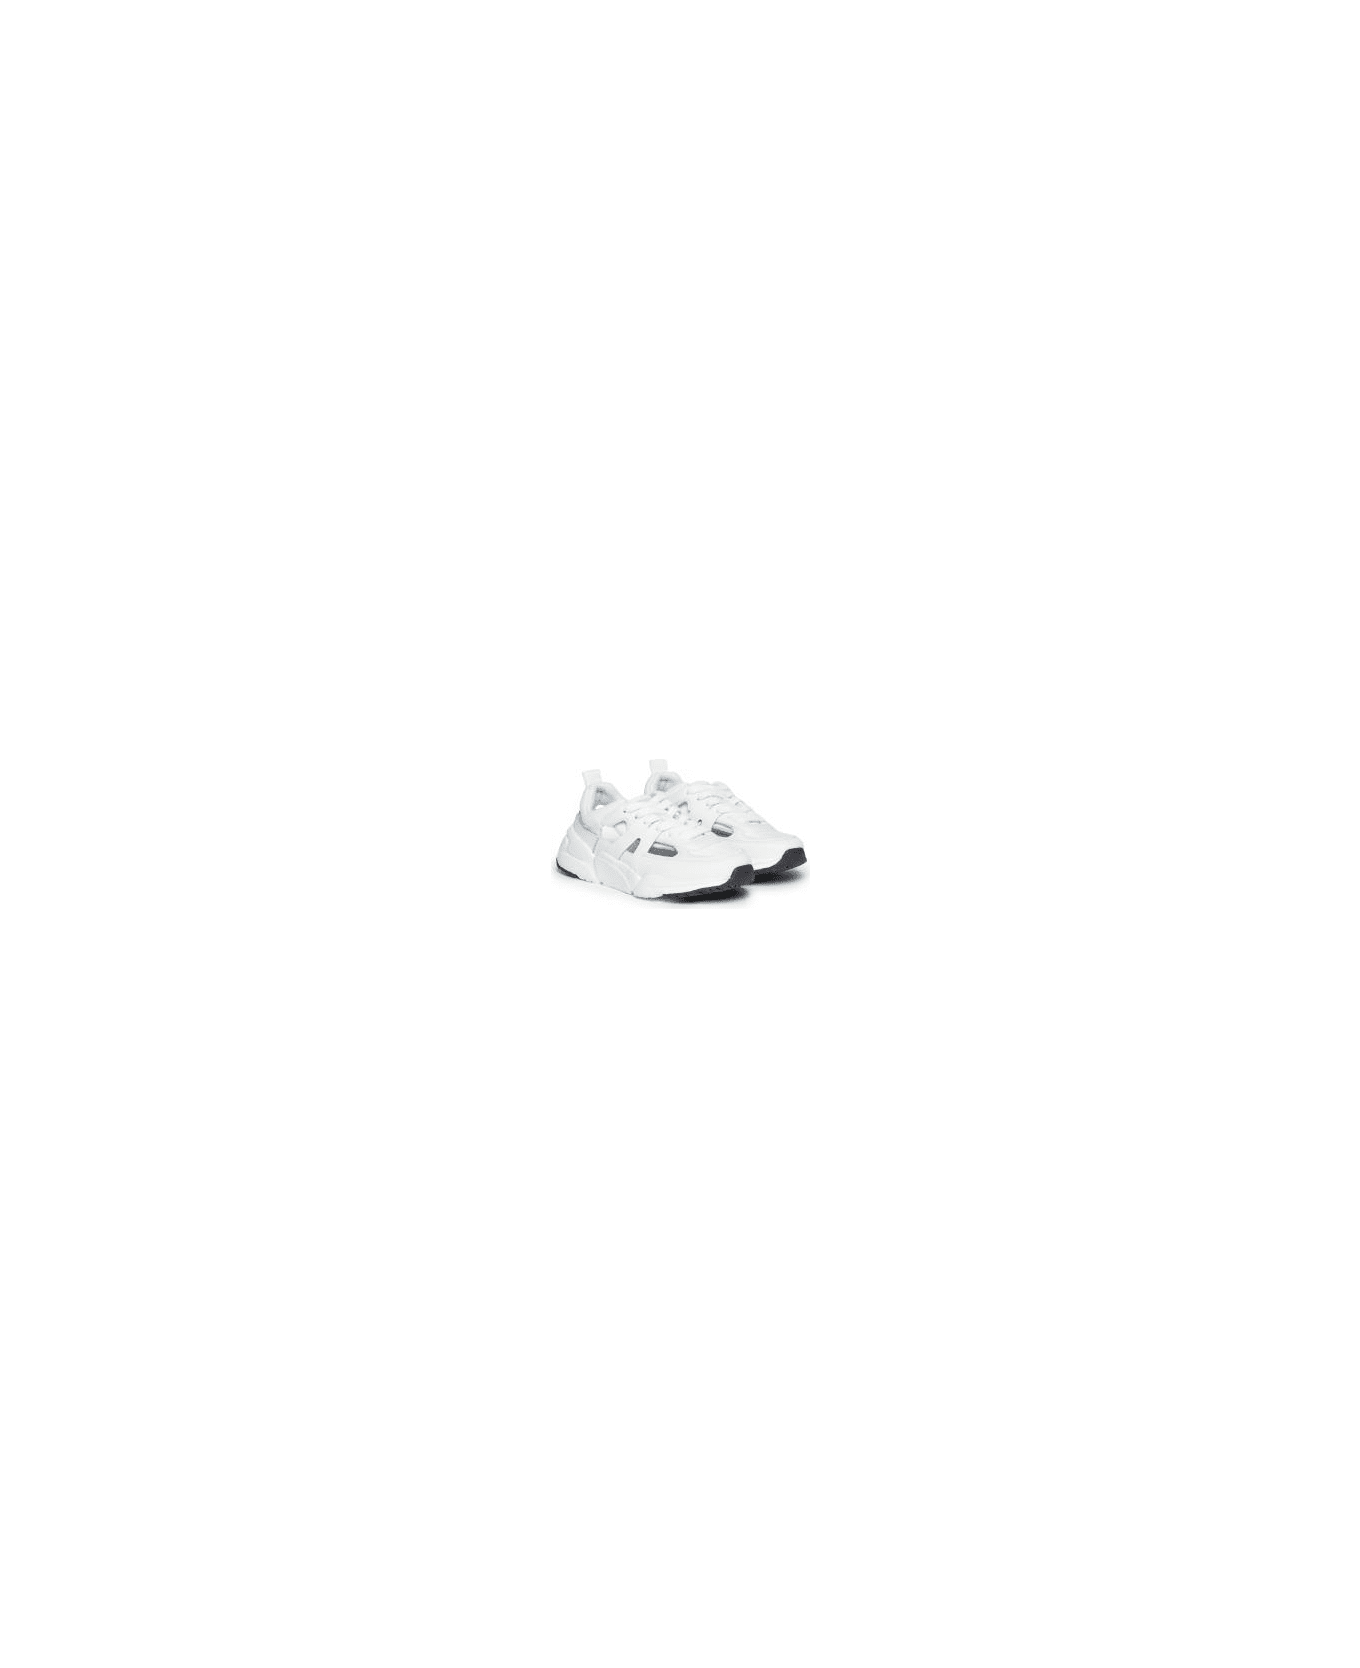 Diesel Sneakers S-millenium - White シューズ